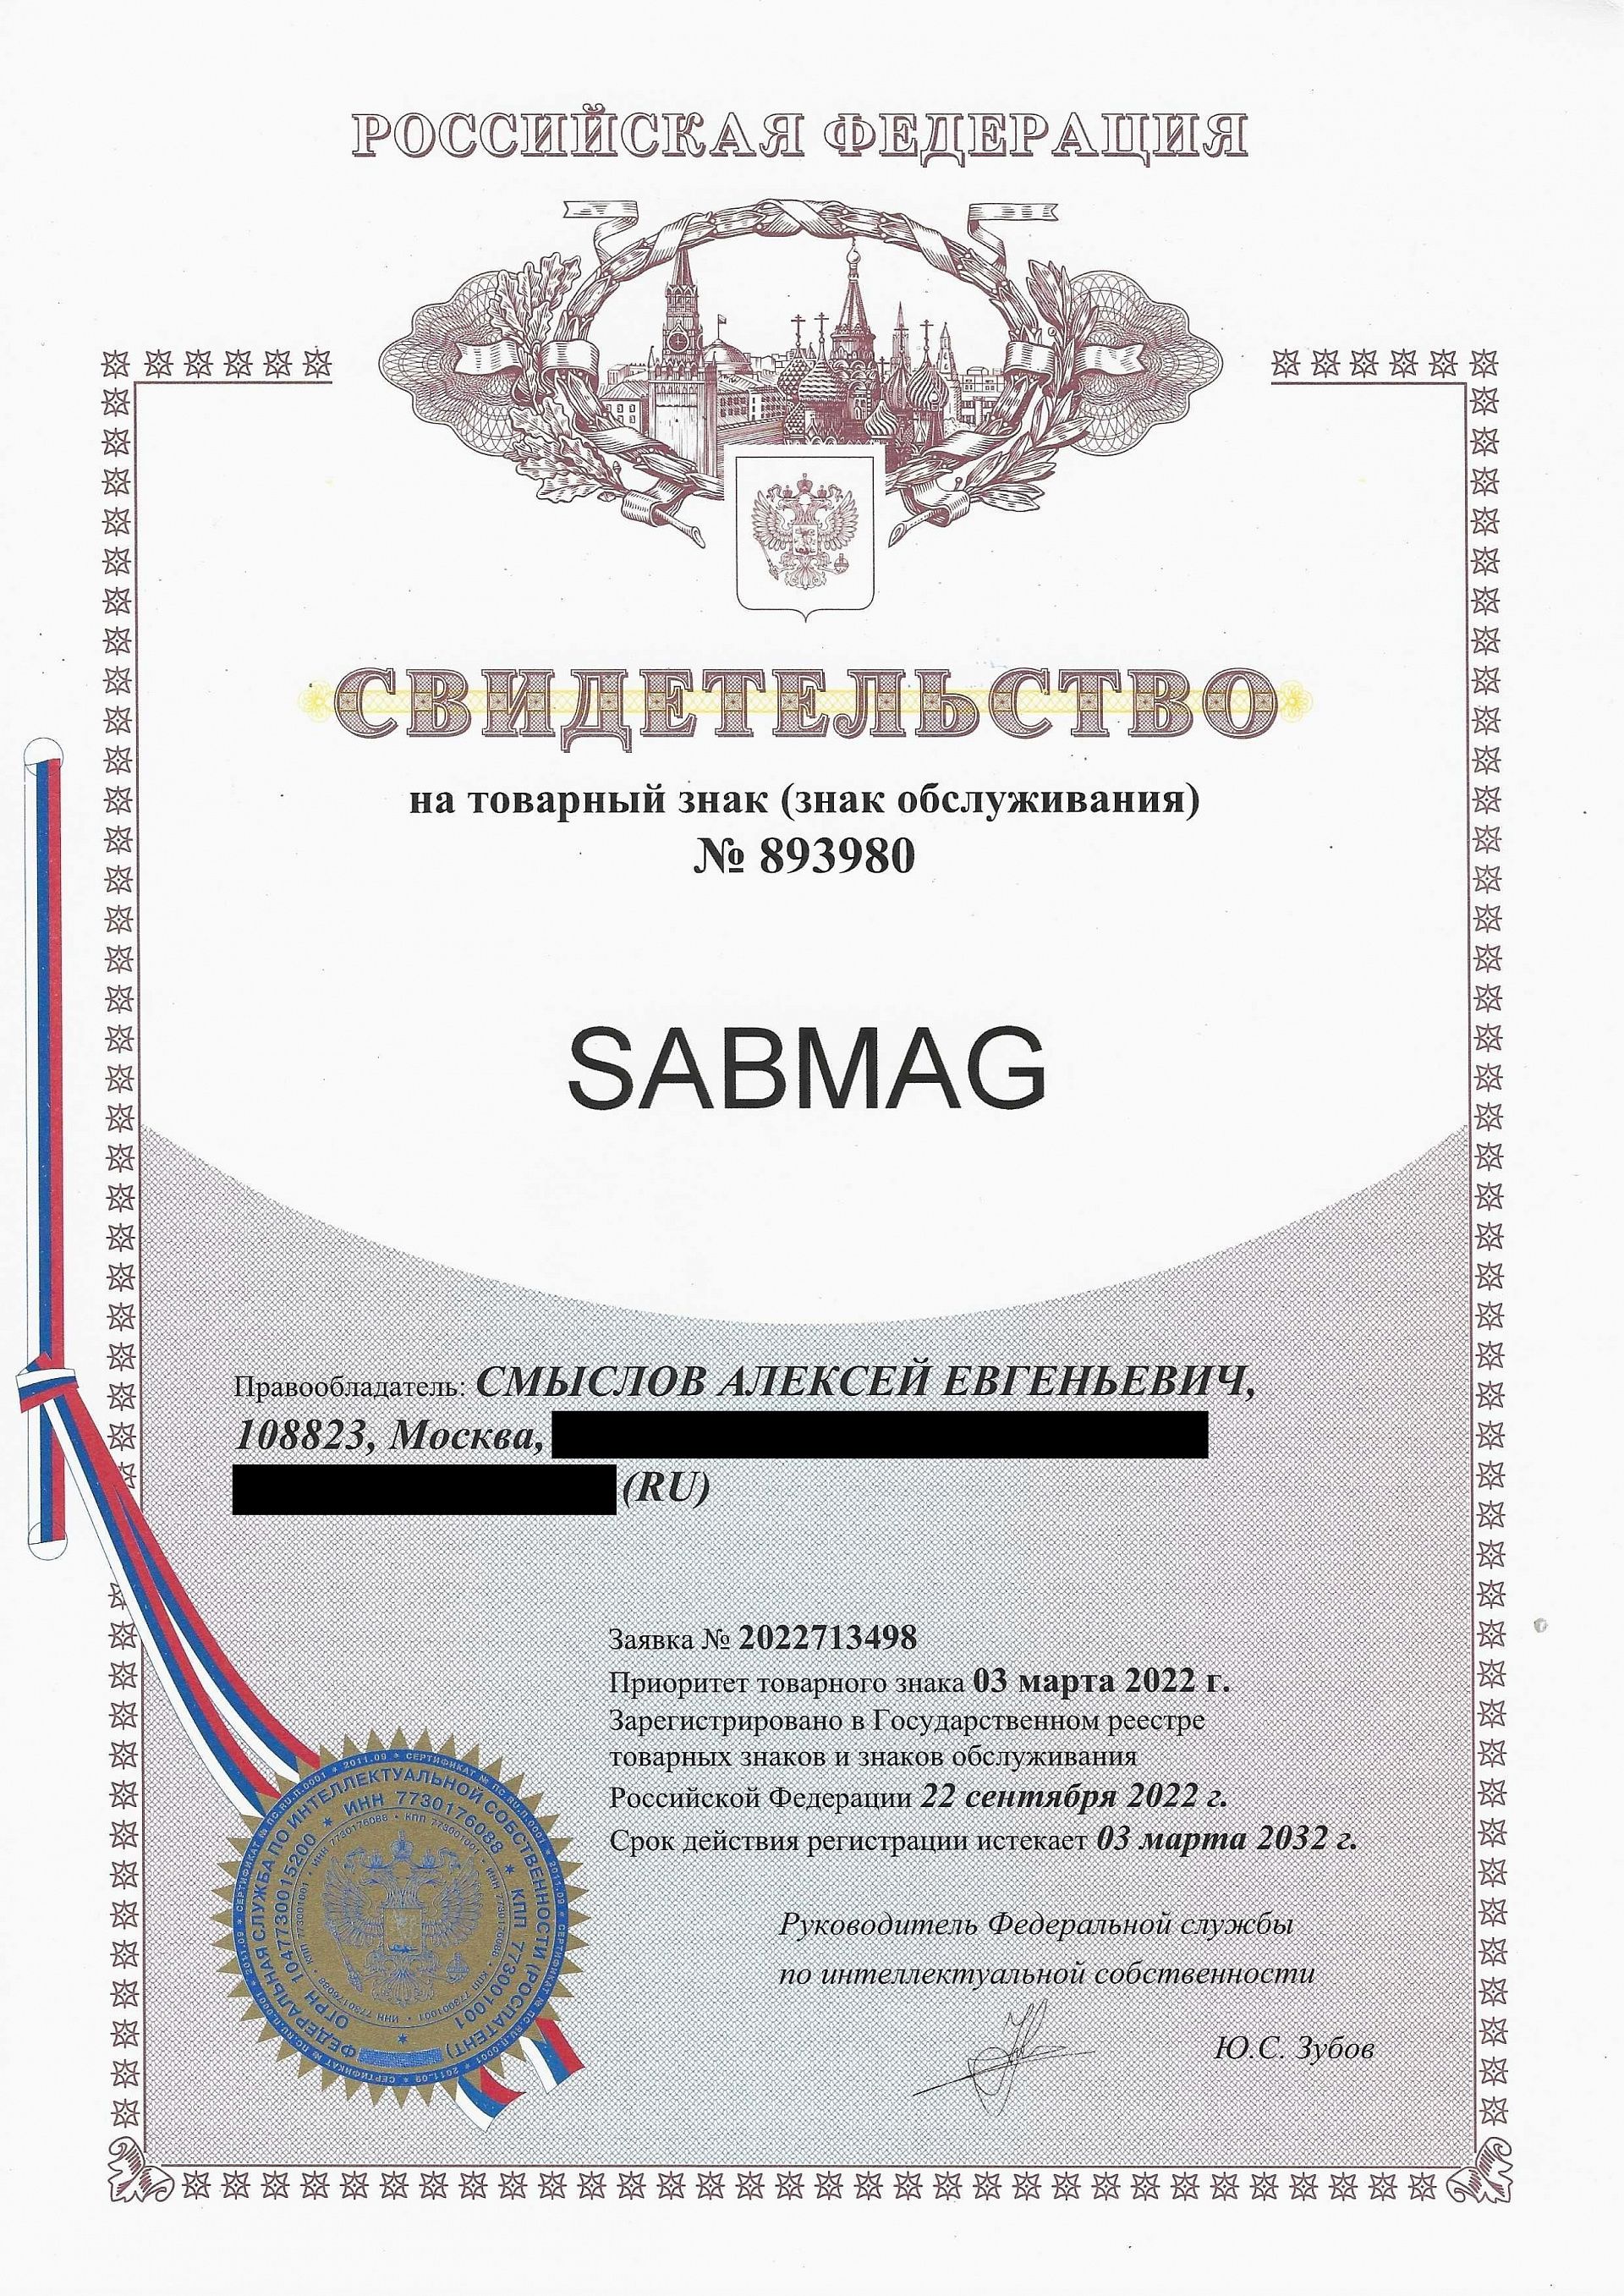 Товарный знак № 893980 – Sabmag